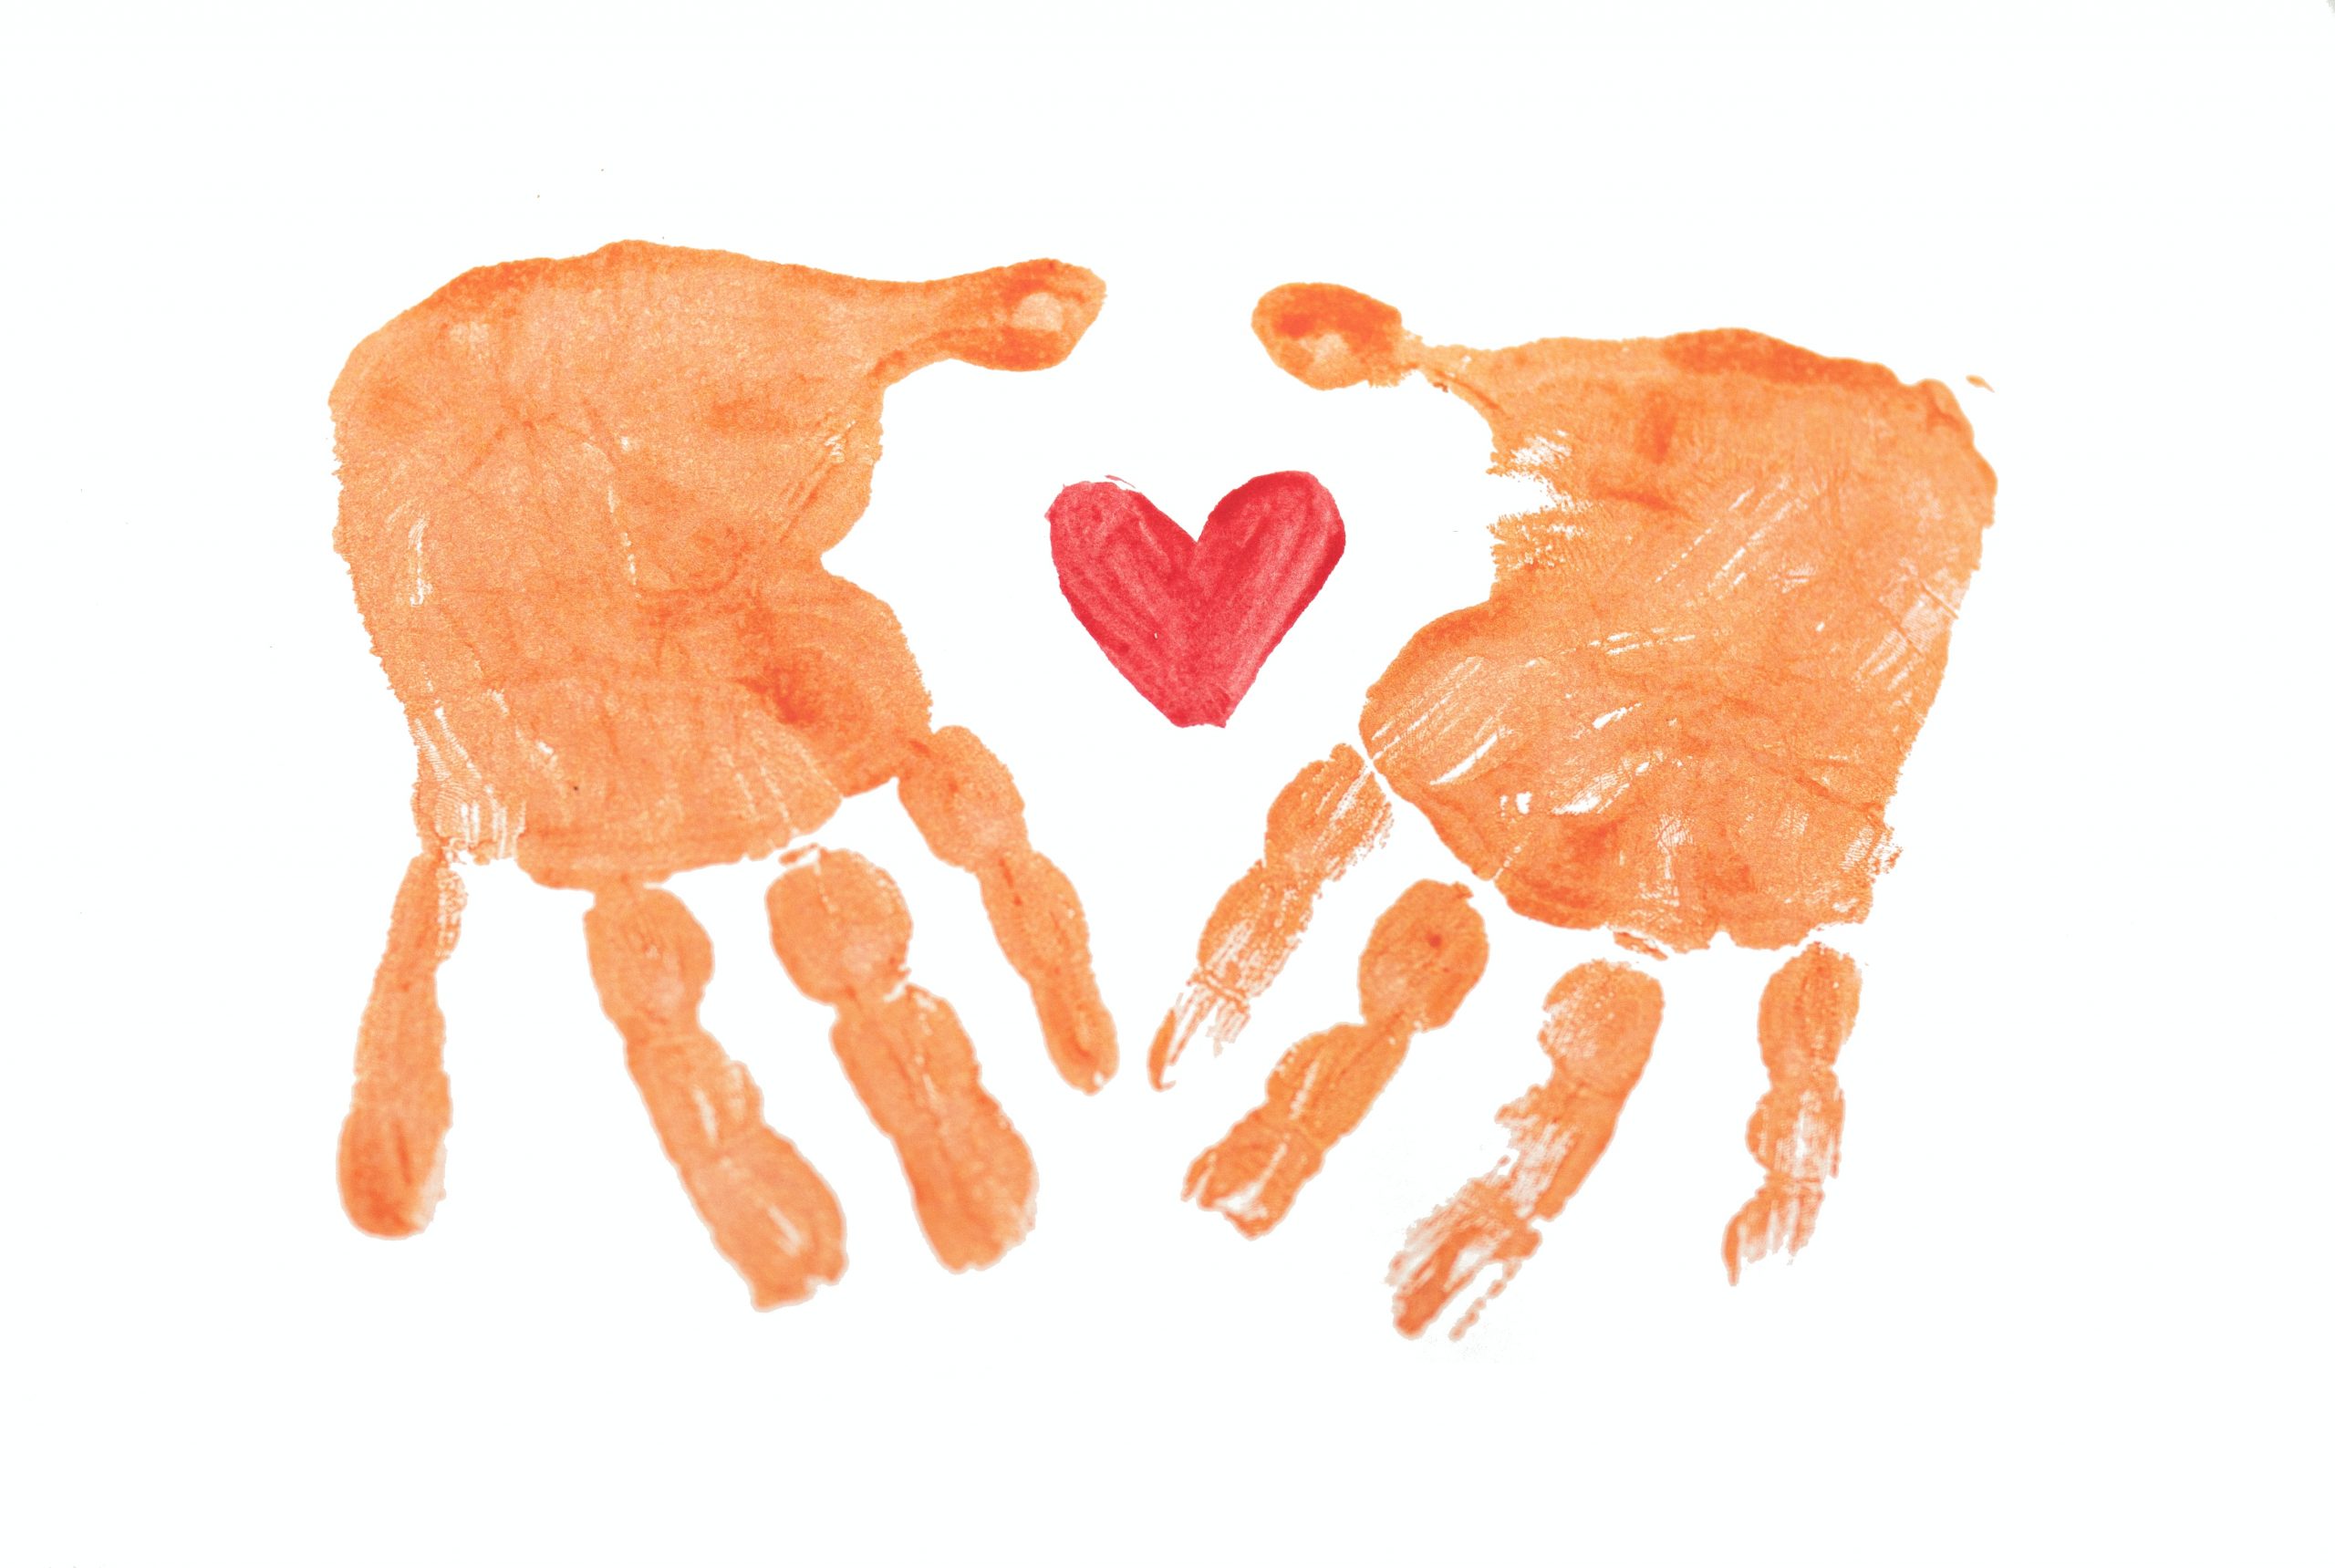 Desenho com pintura da palma de duas mãos de criança e um coração no meio.